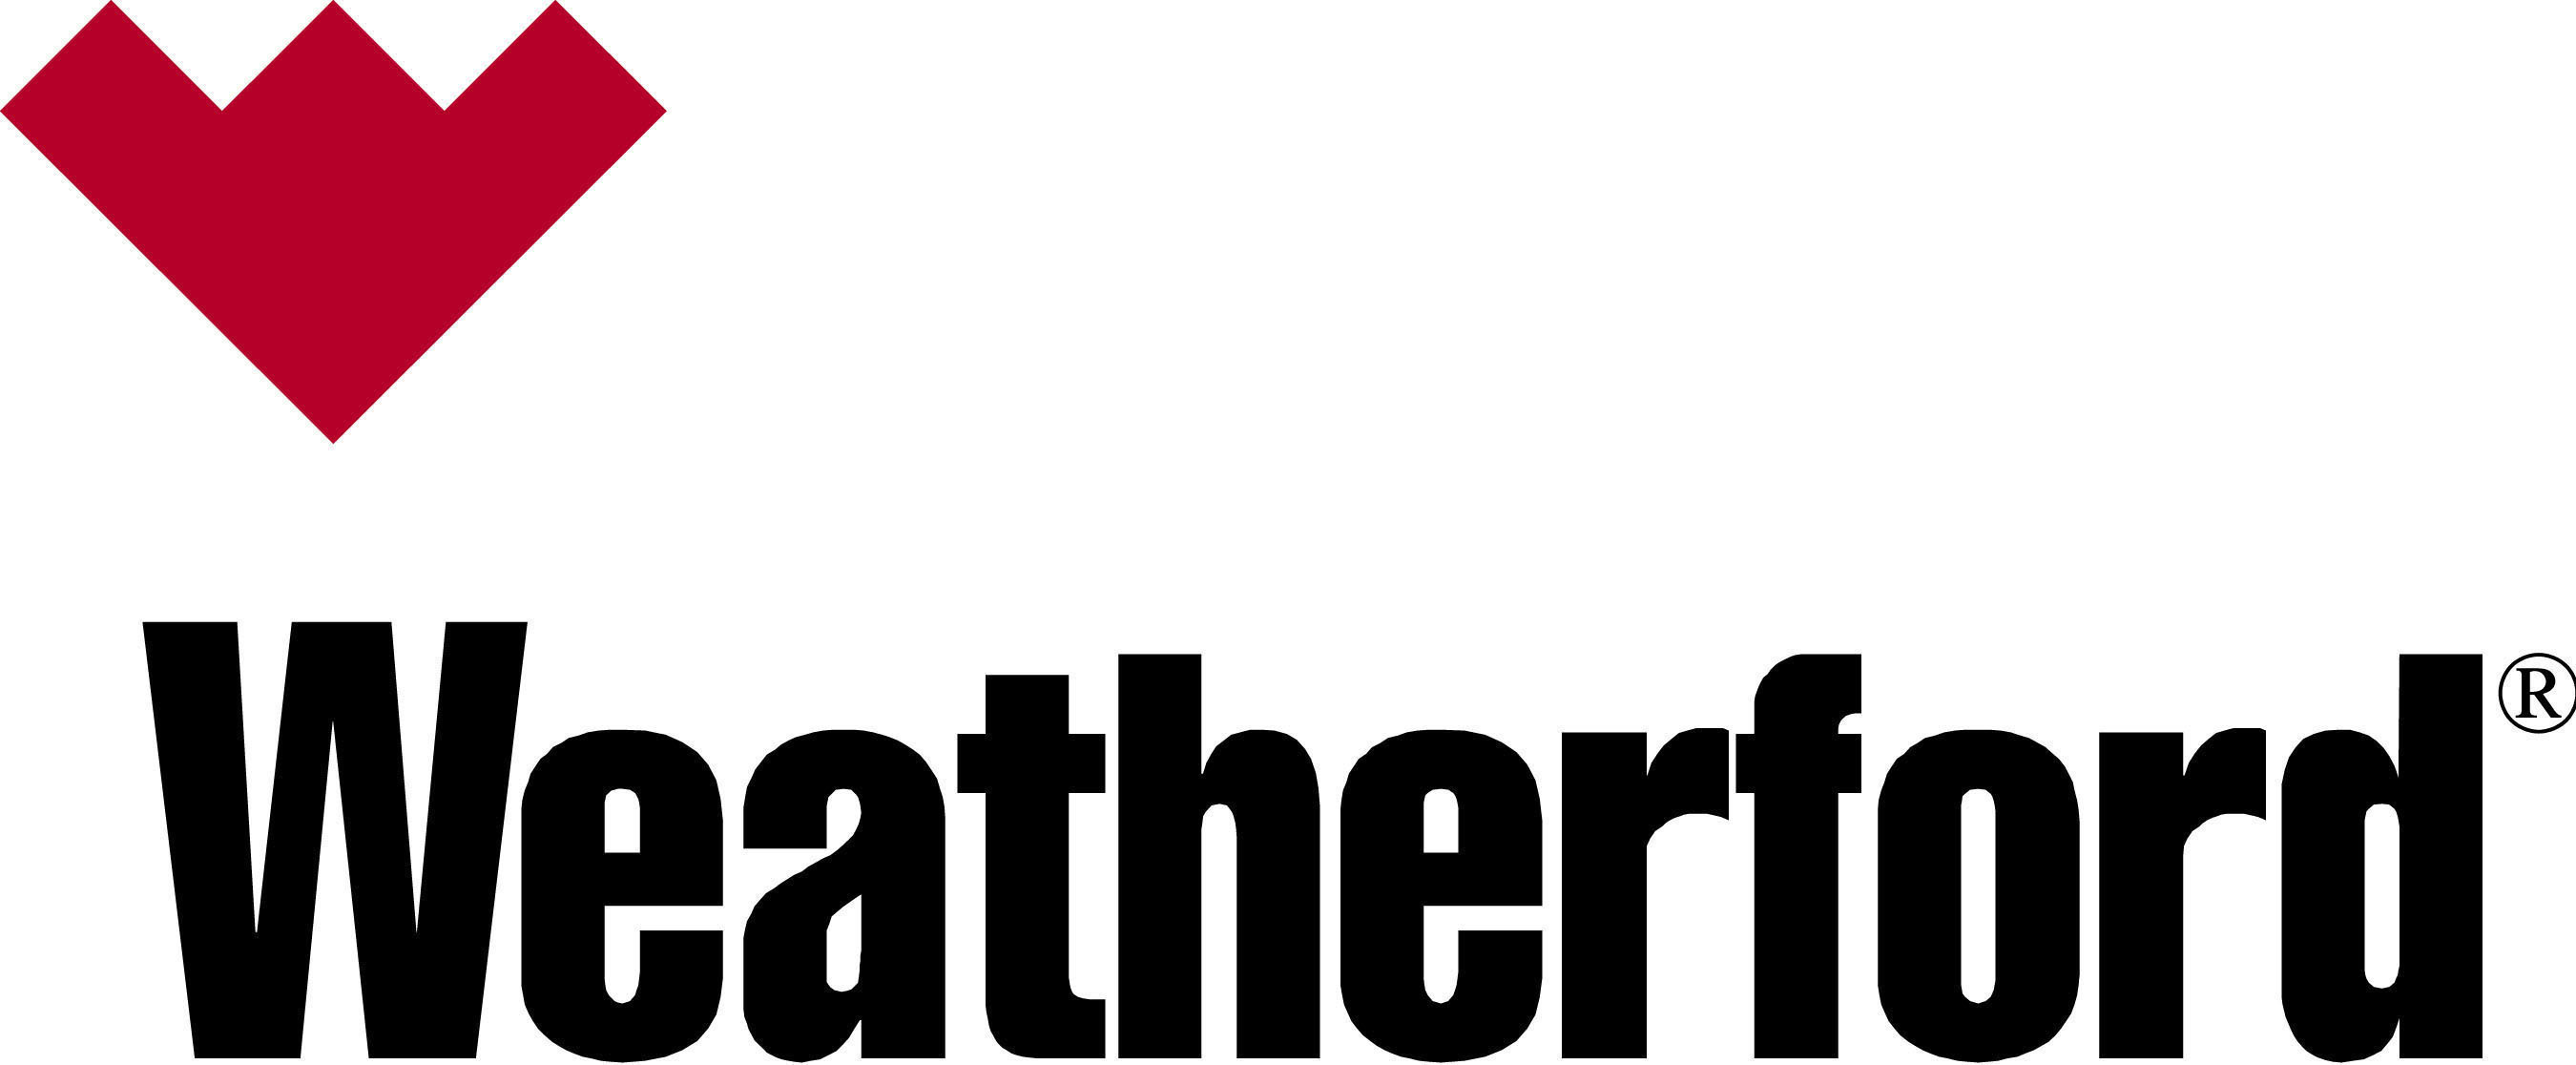 Weatherford logo.